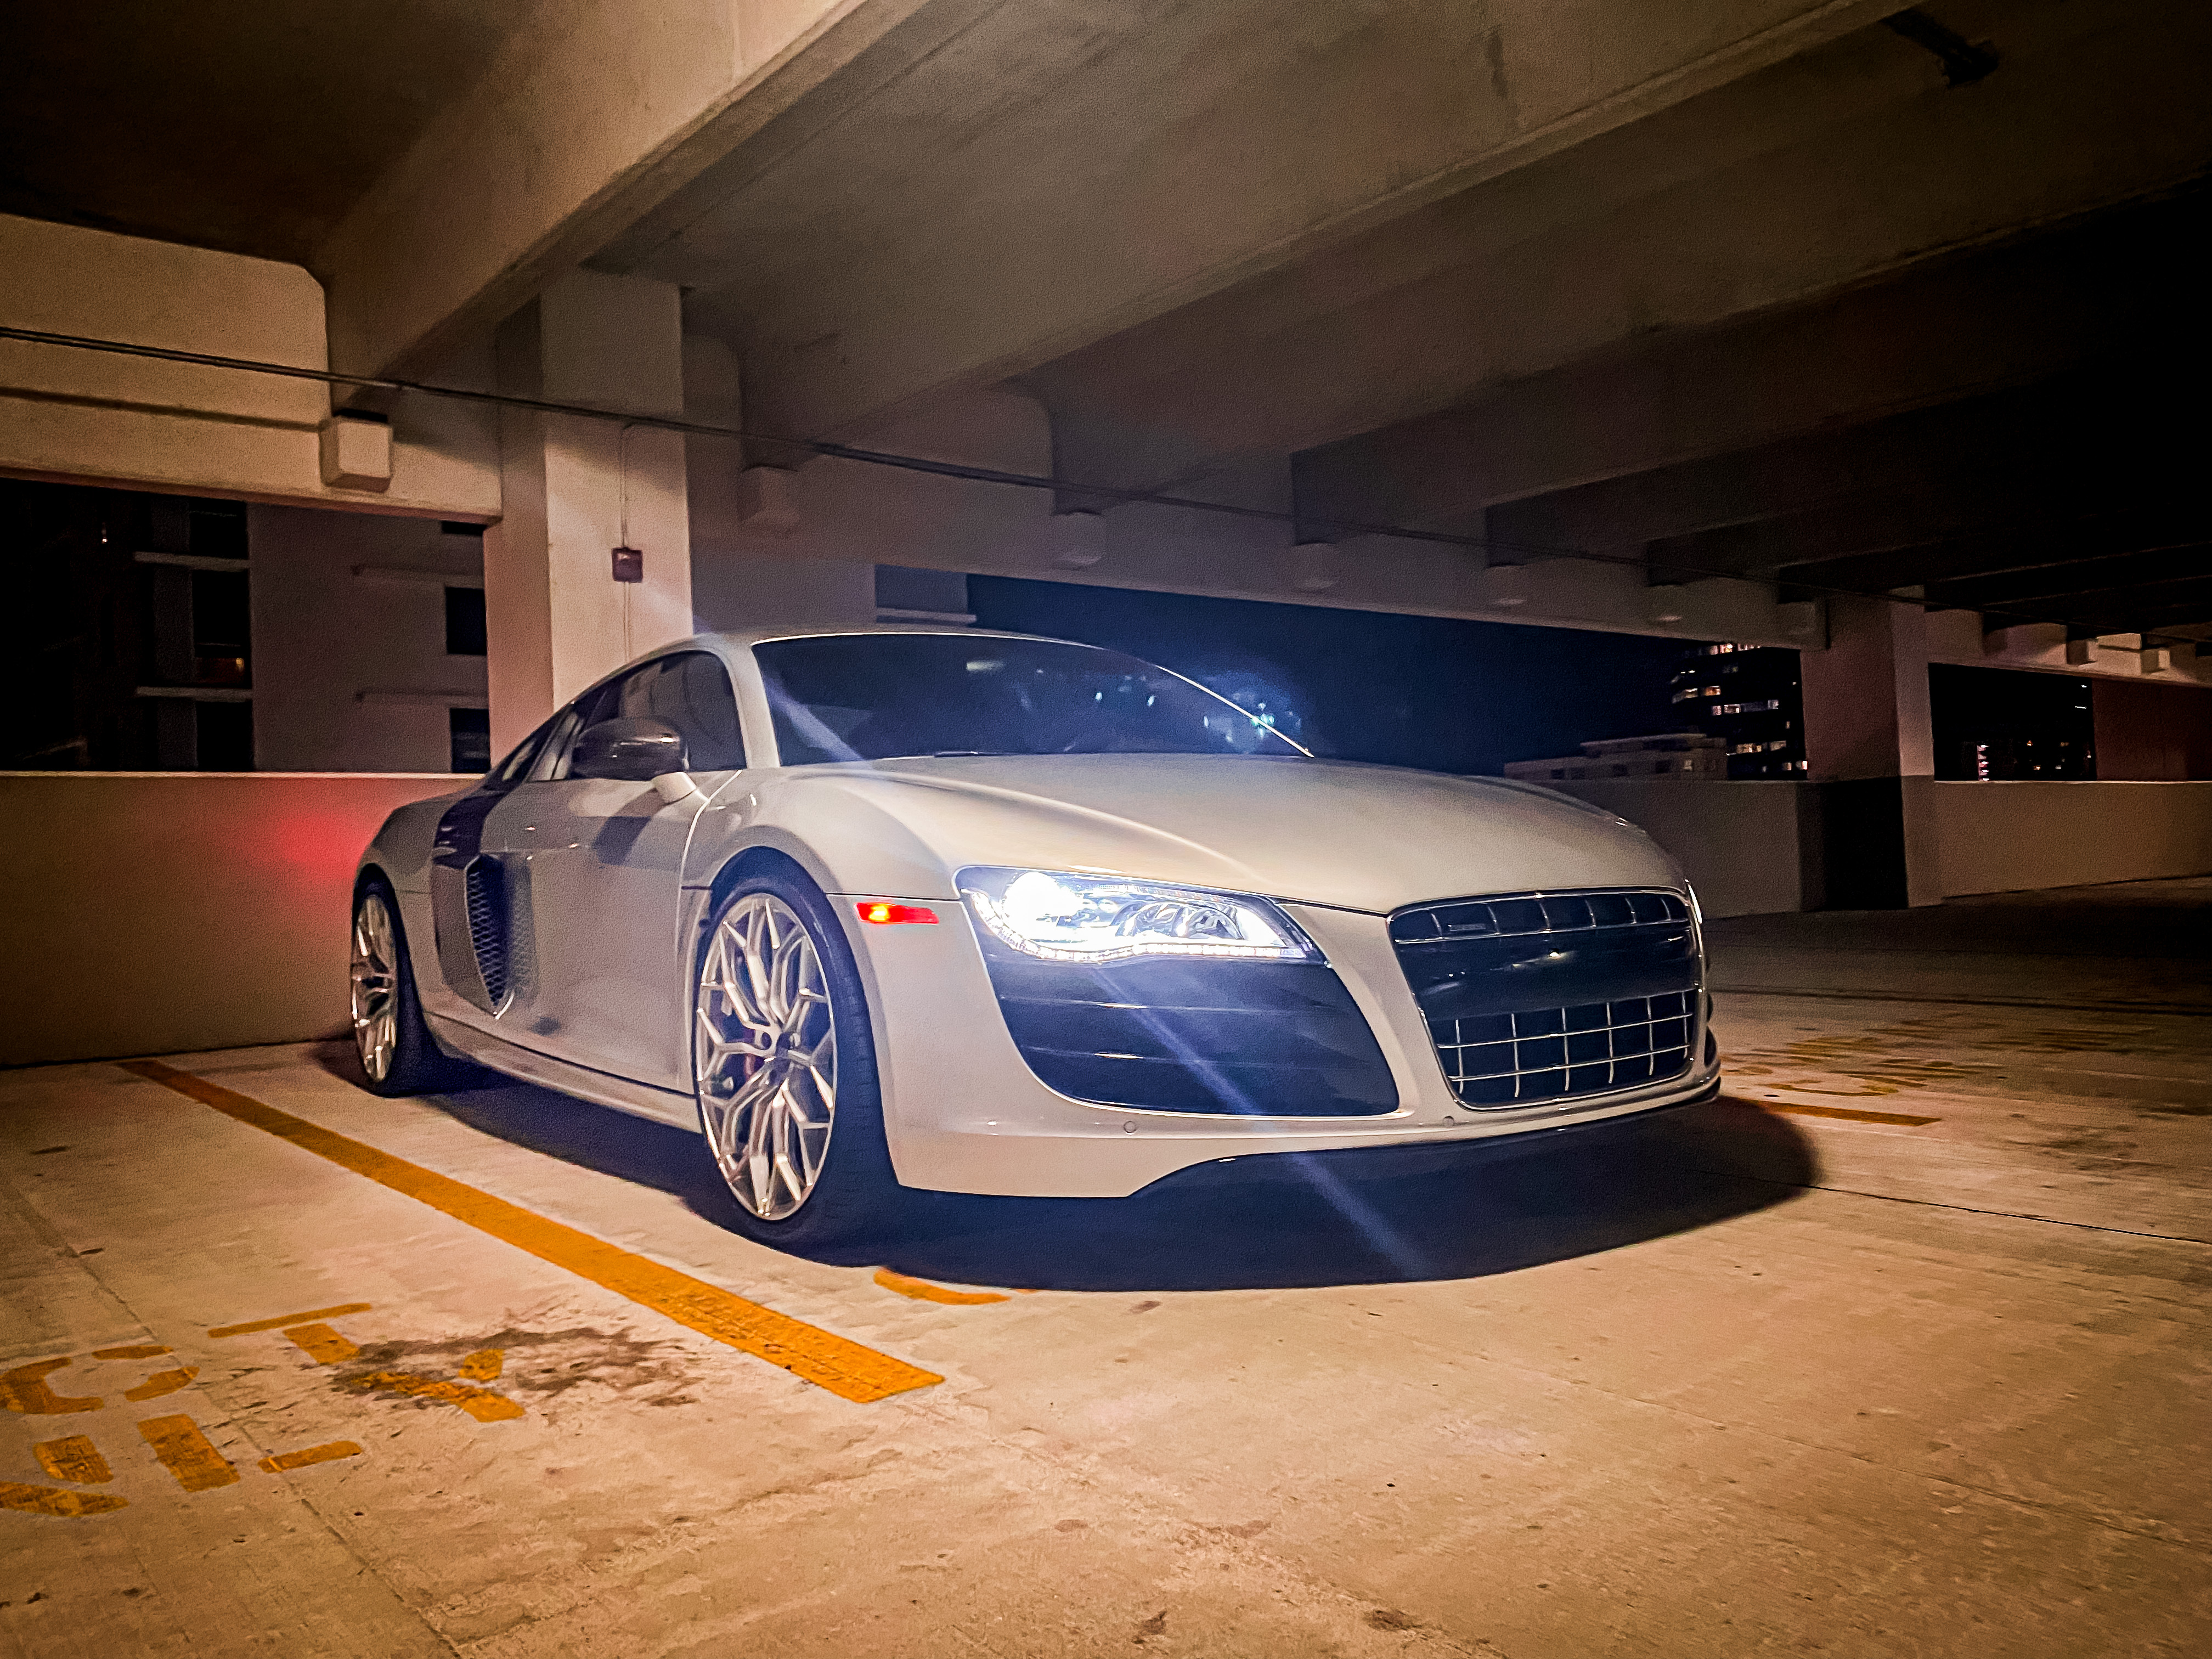 Audi R8 in a parking garage